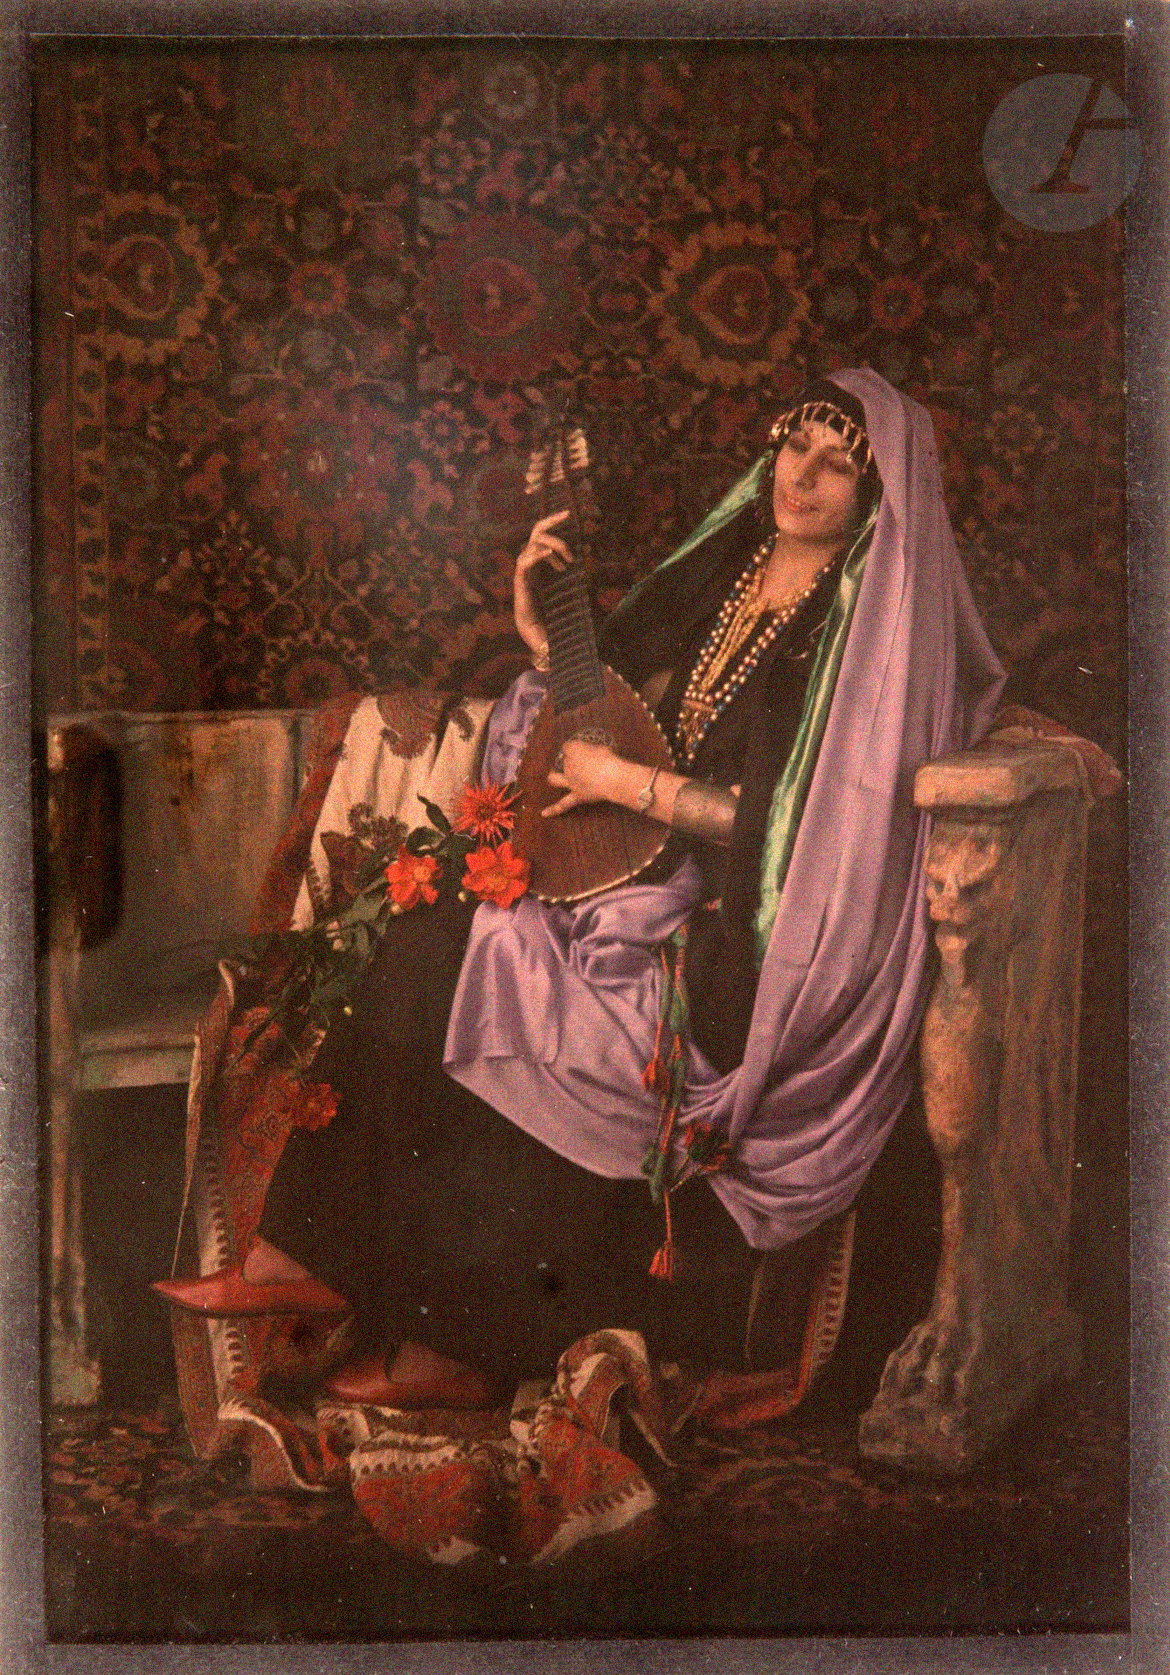 Henry-René d’Allemagne (1863-1950) et divers :: Jeune femme portant des vêtements et des bijoux persans, ca. 1910. Autochrome. | Ader